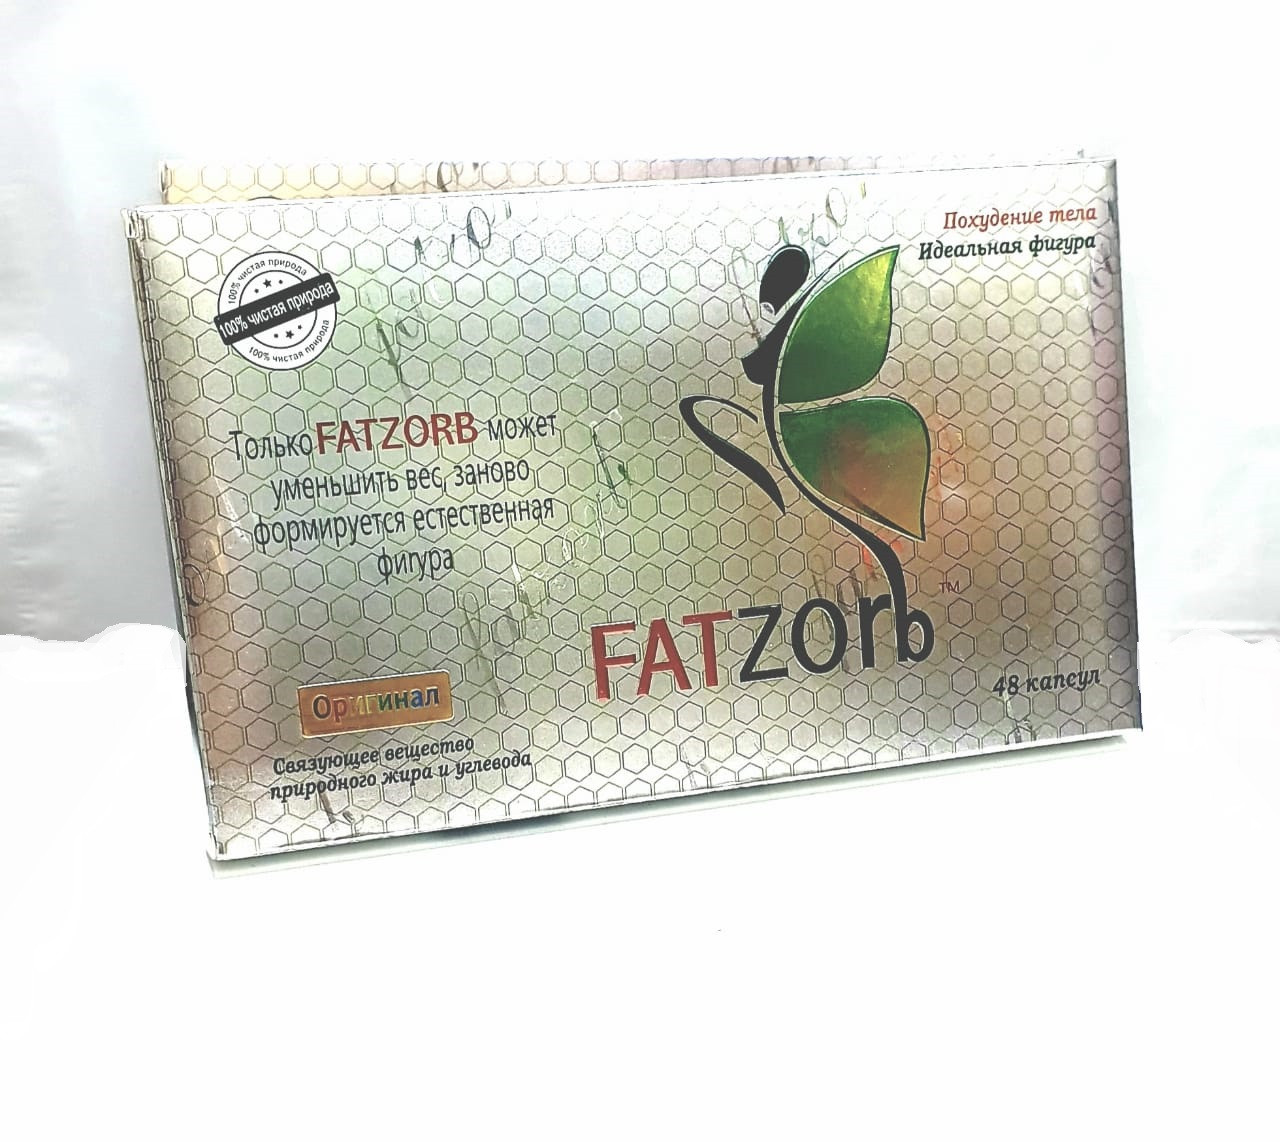 Капсулы для похудения в коробке Fatzorb (фатзорб) коробка 48 капсул. оригинал